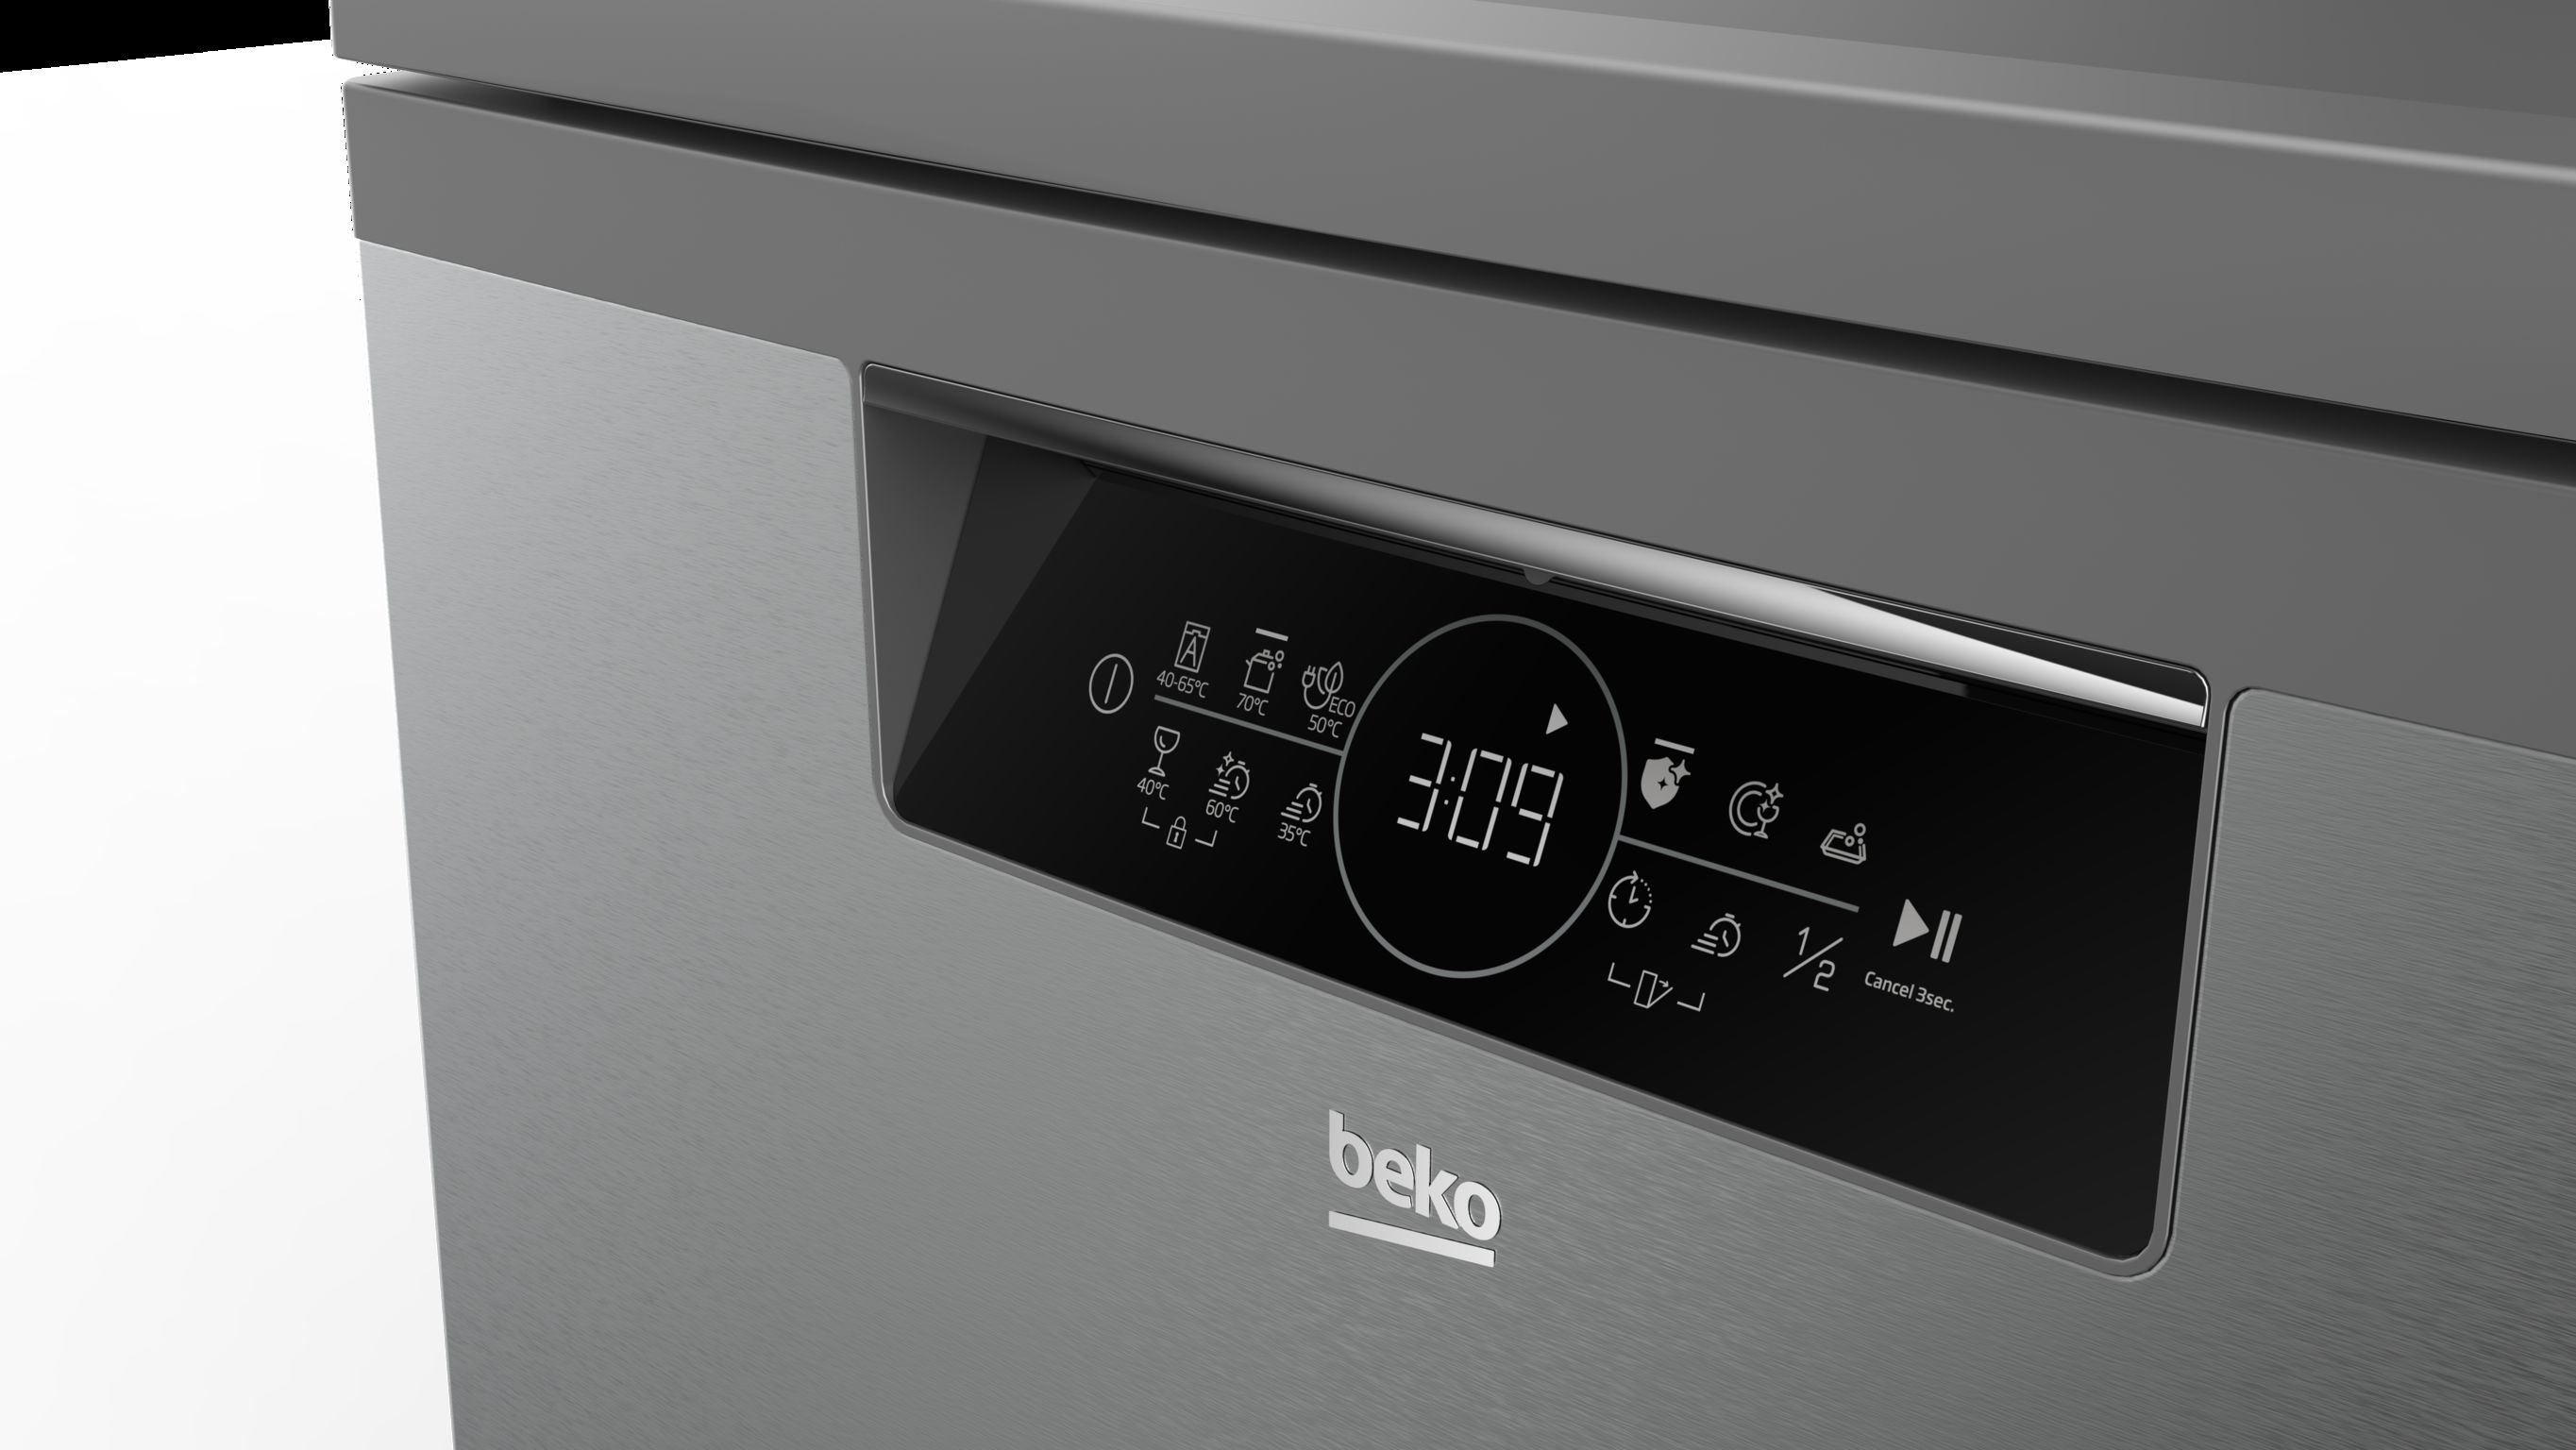 Beko Beyond Series bPro500 Dishwasher